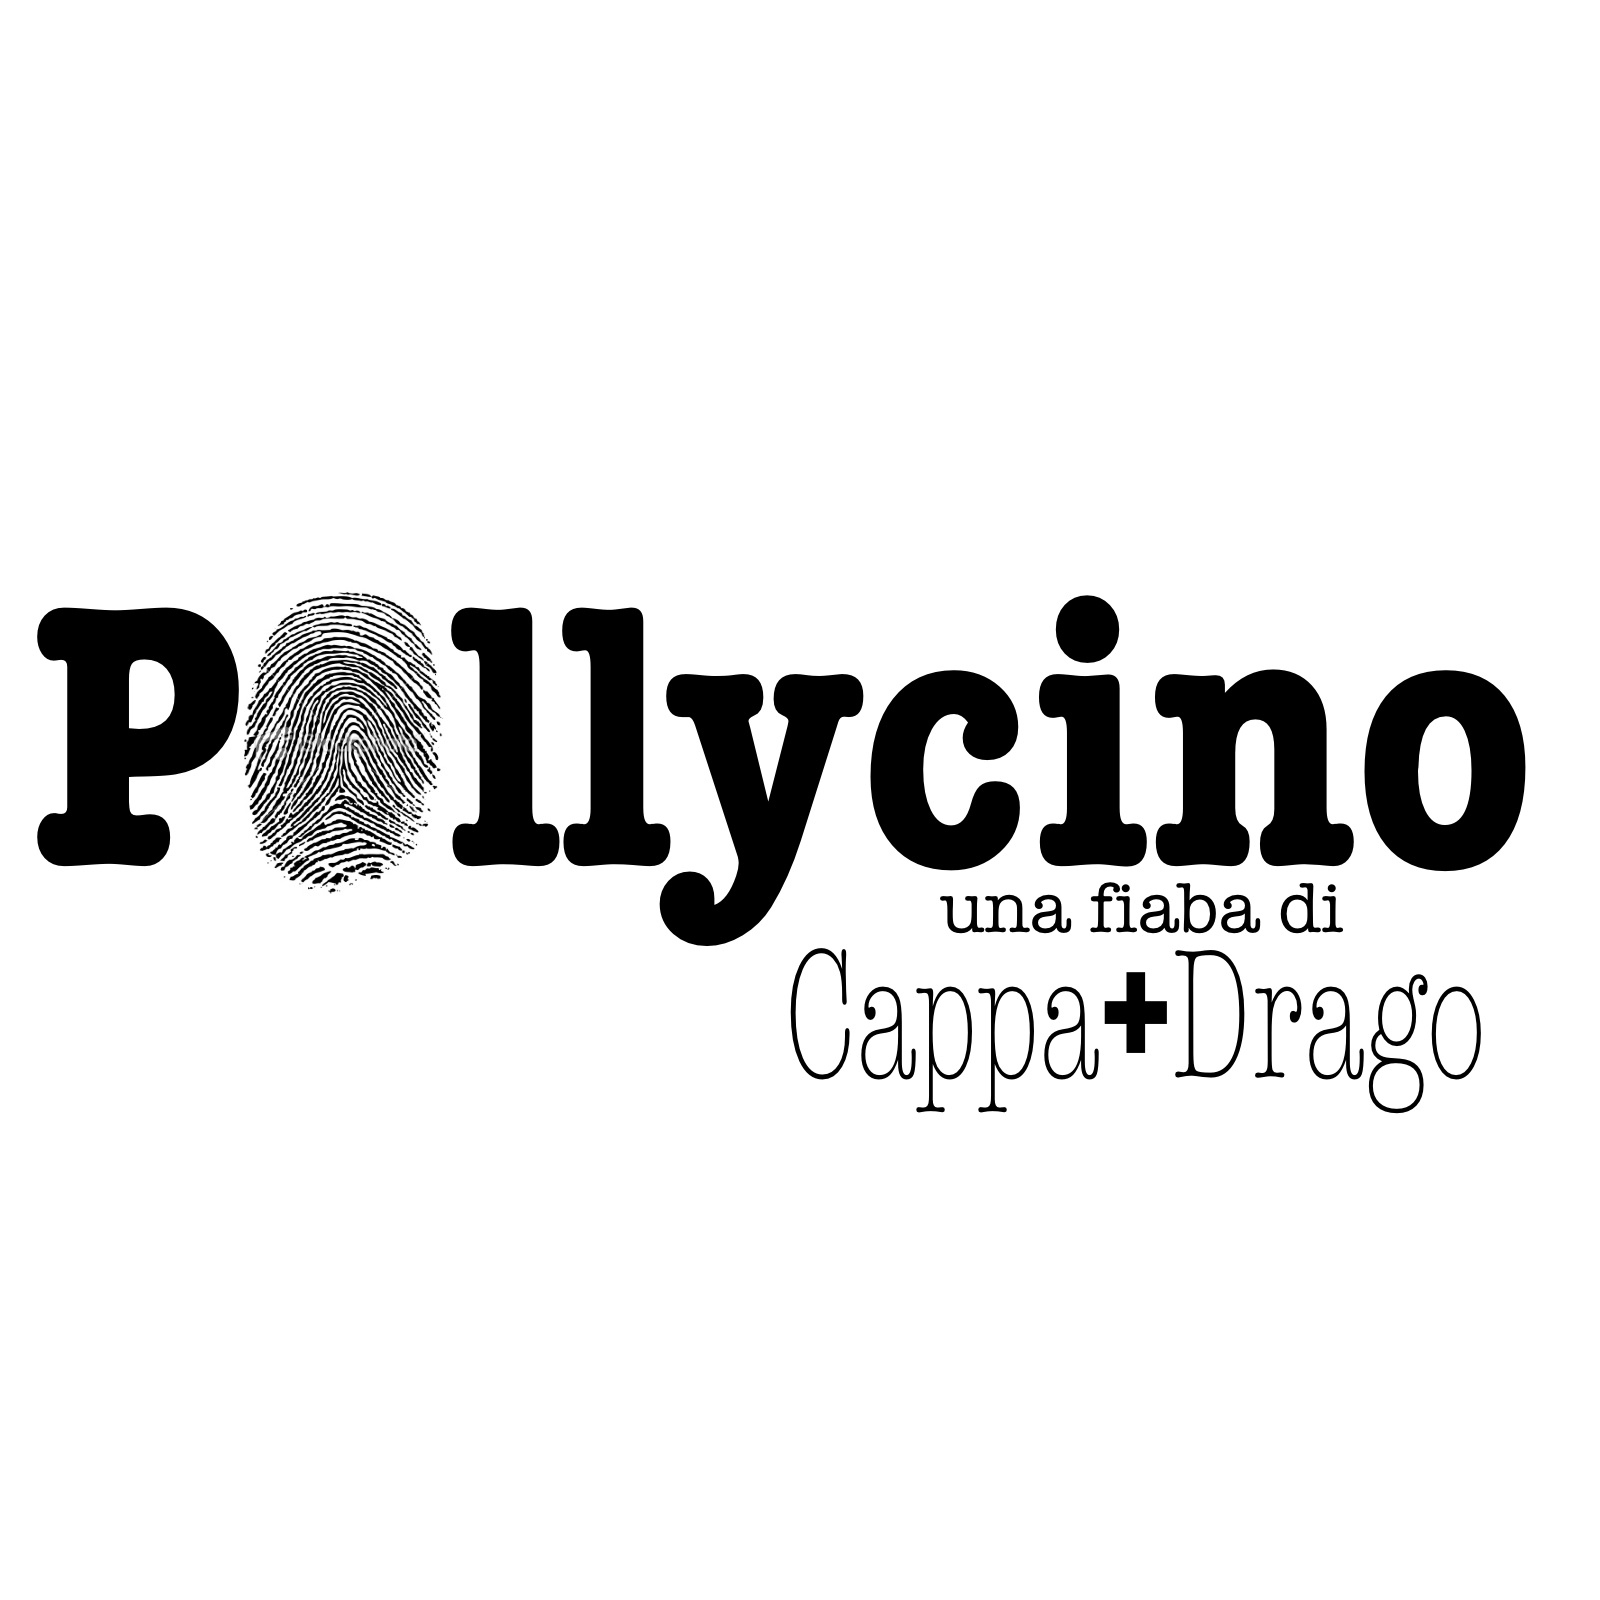 <span>Pollycino</span>
